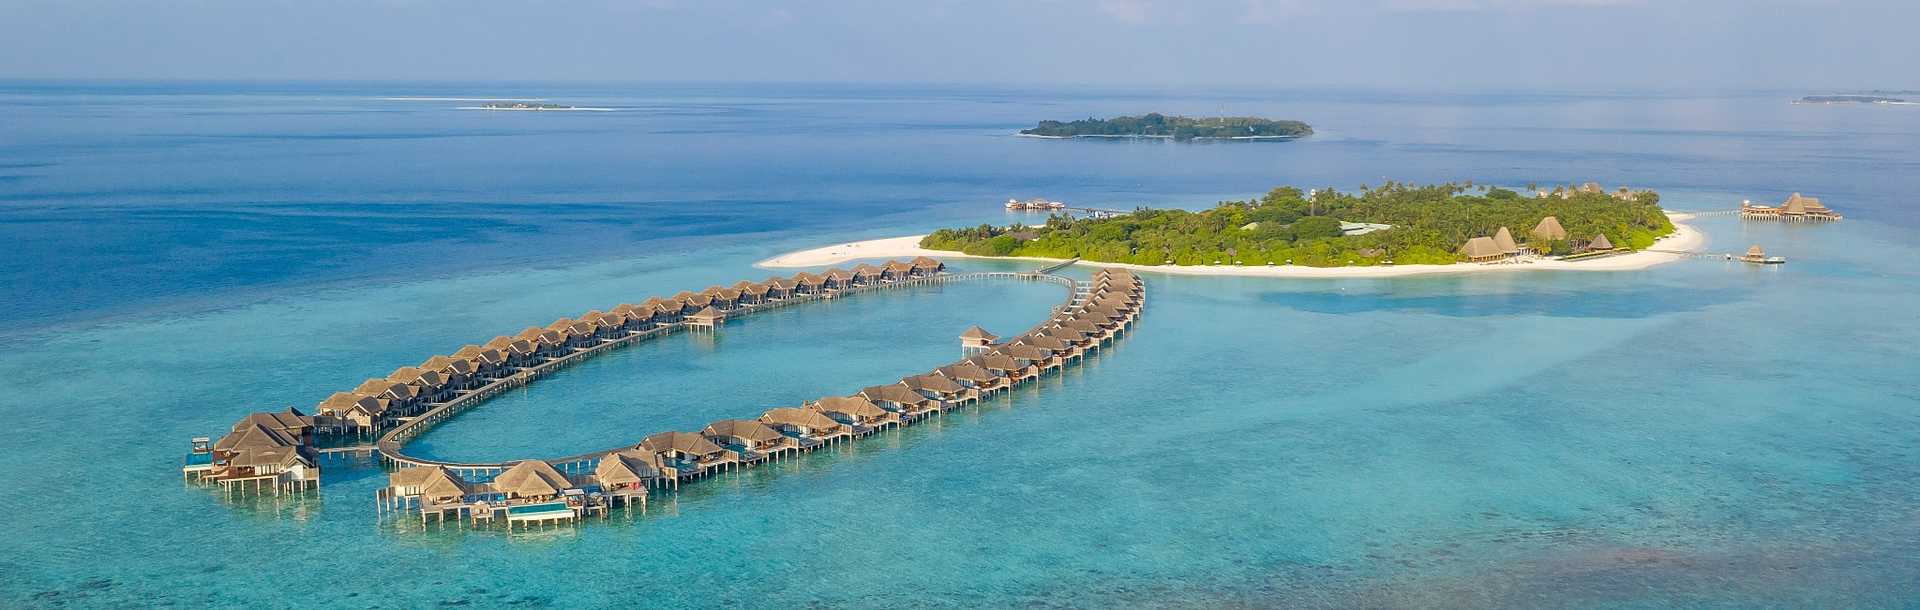 Baa Atoll Anantara Kihavah Water Villas in Maldives